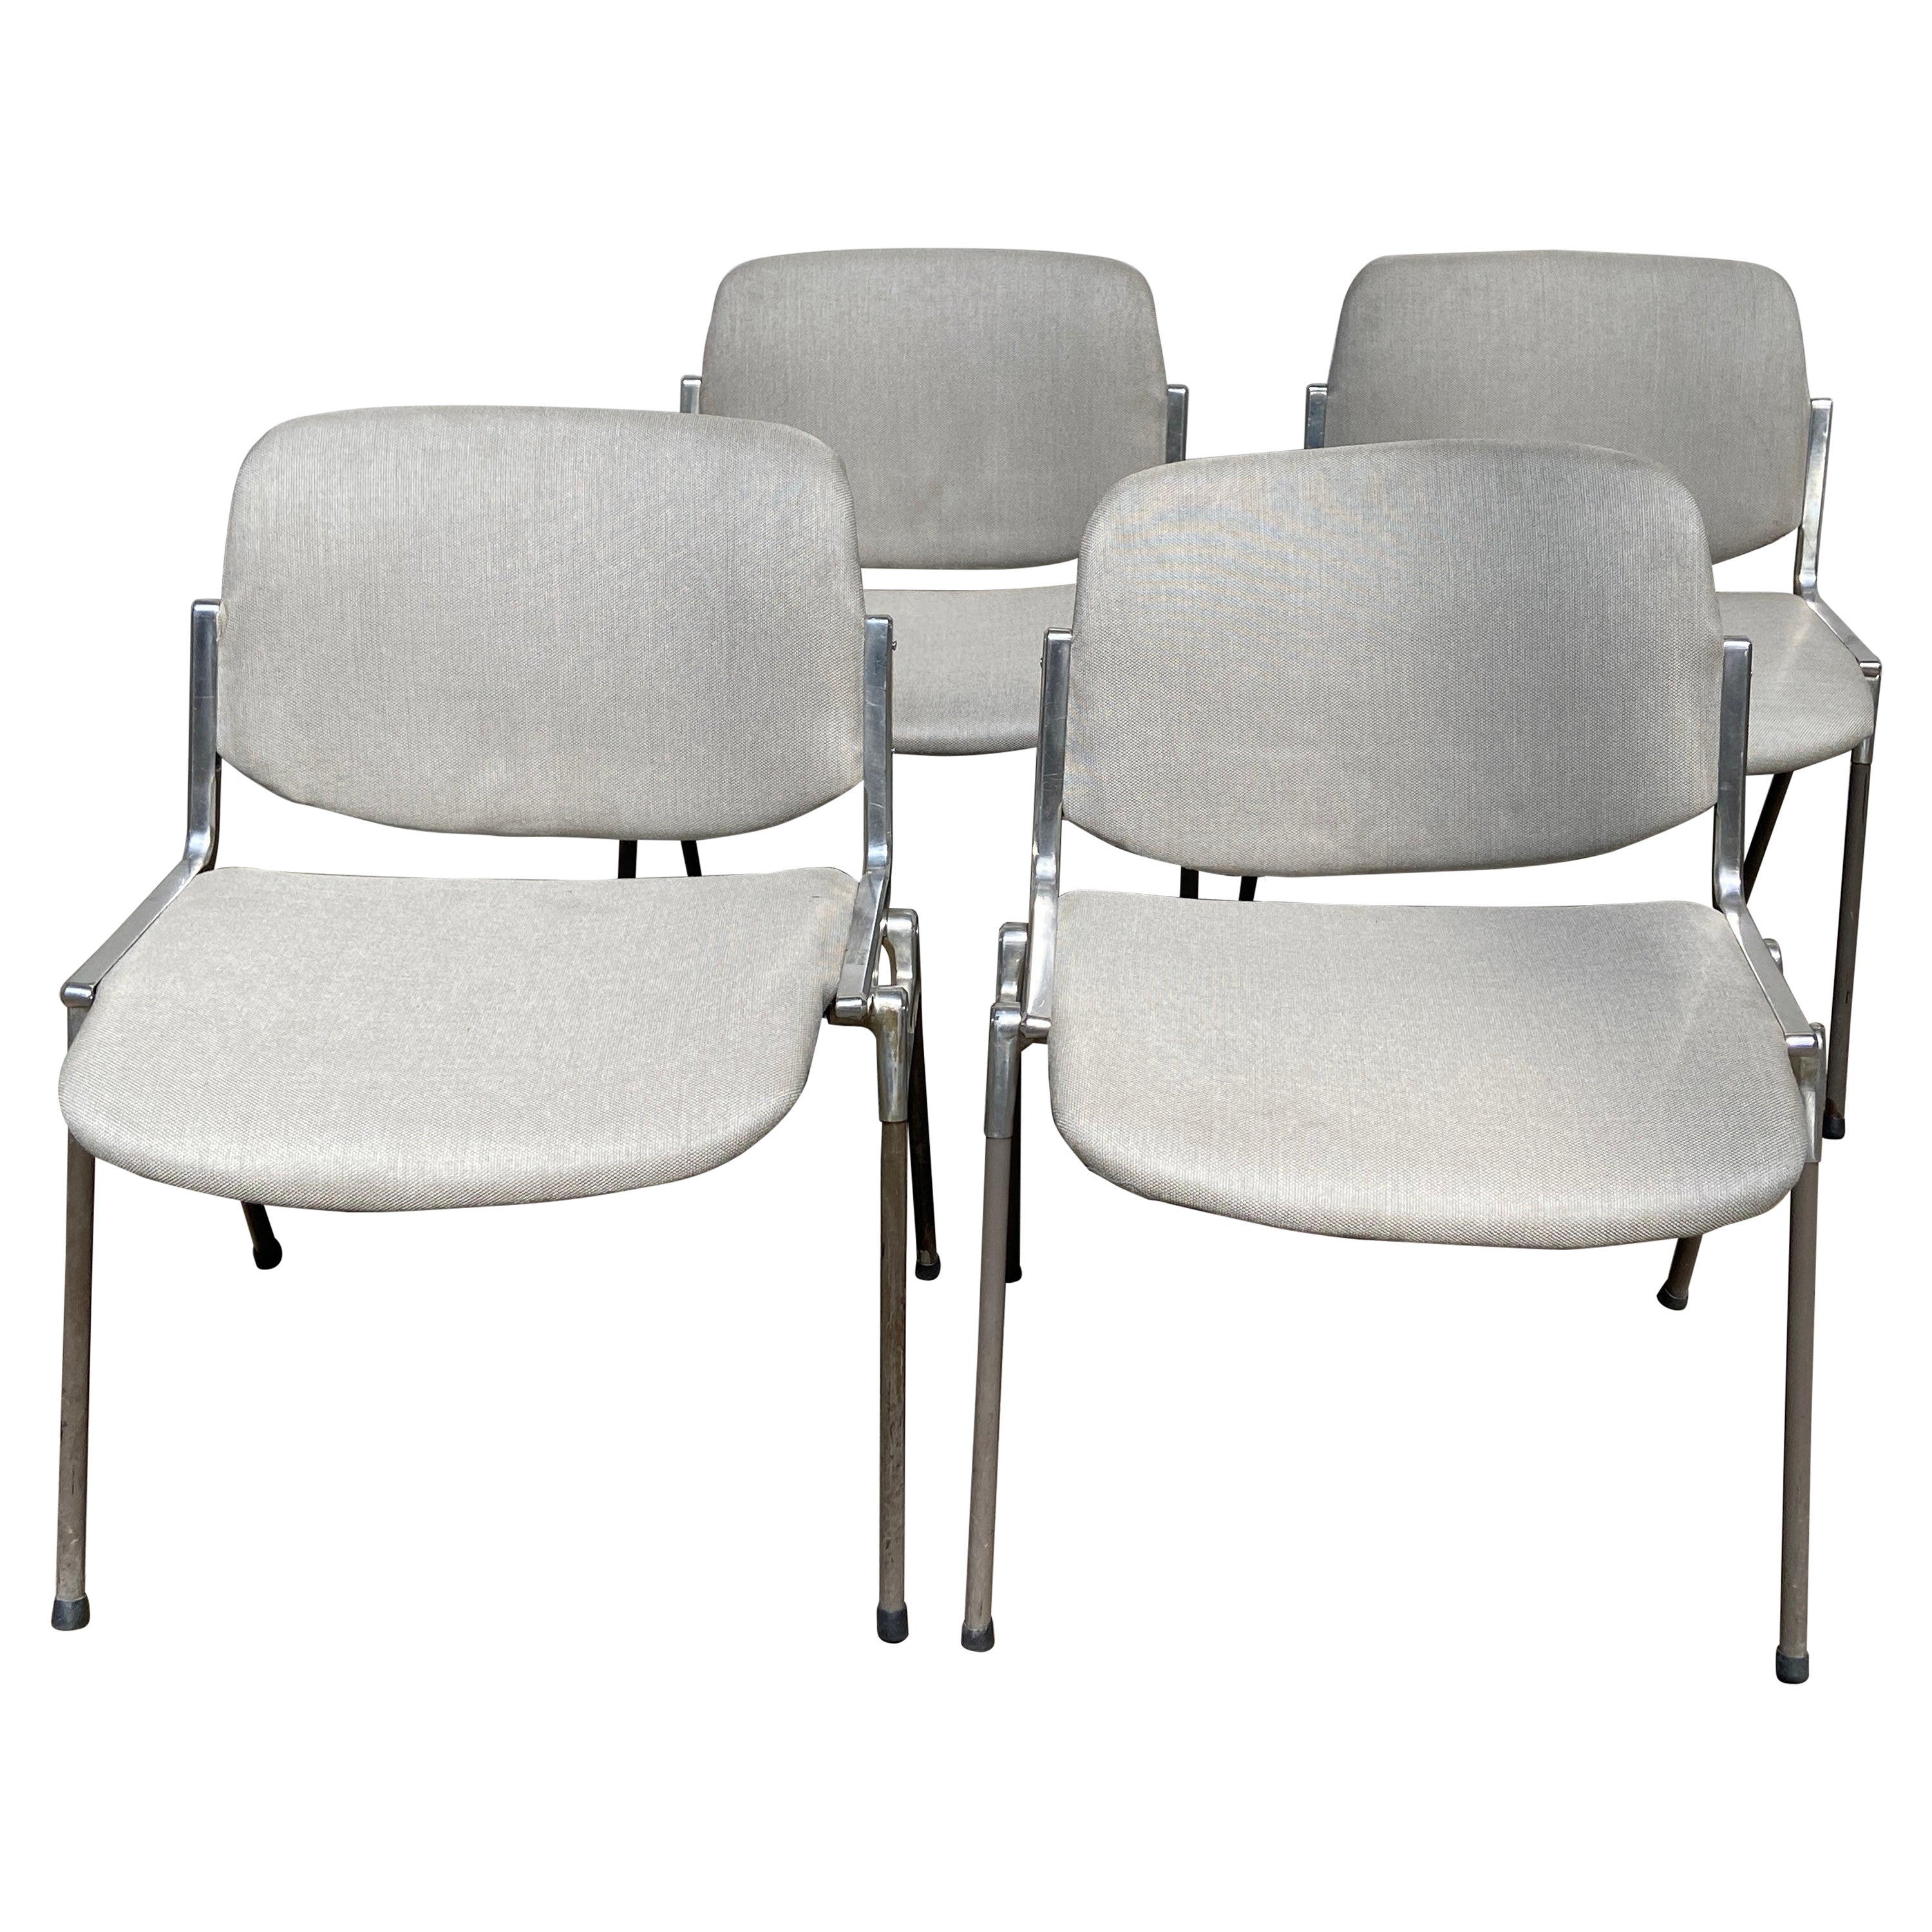 Ensemble de quatre chaises italiennes Dsc 106 de style mi-siècle moderne par Anonima Castelli, années 1960